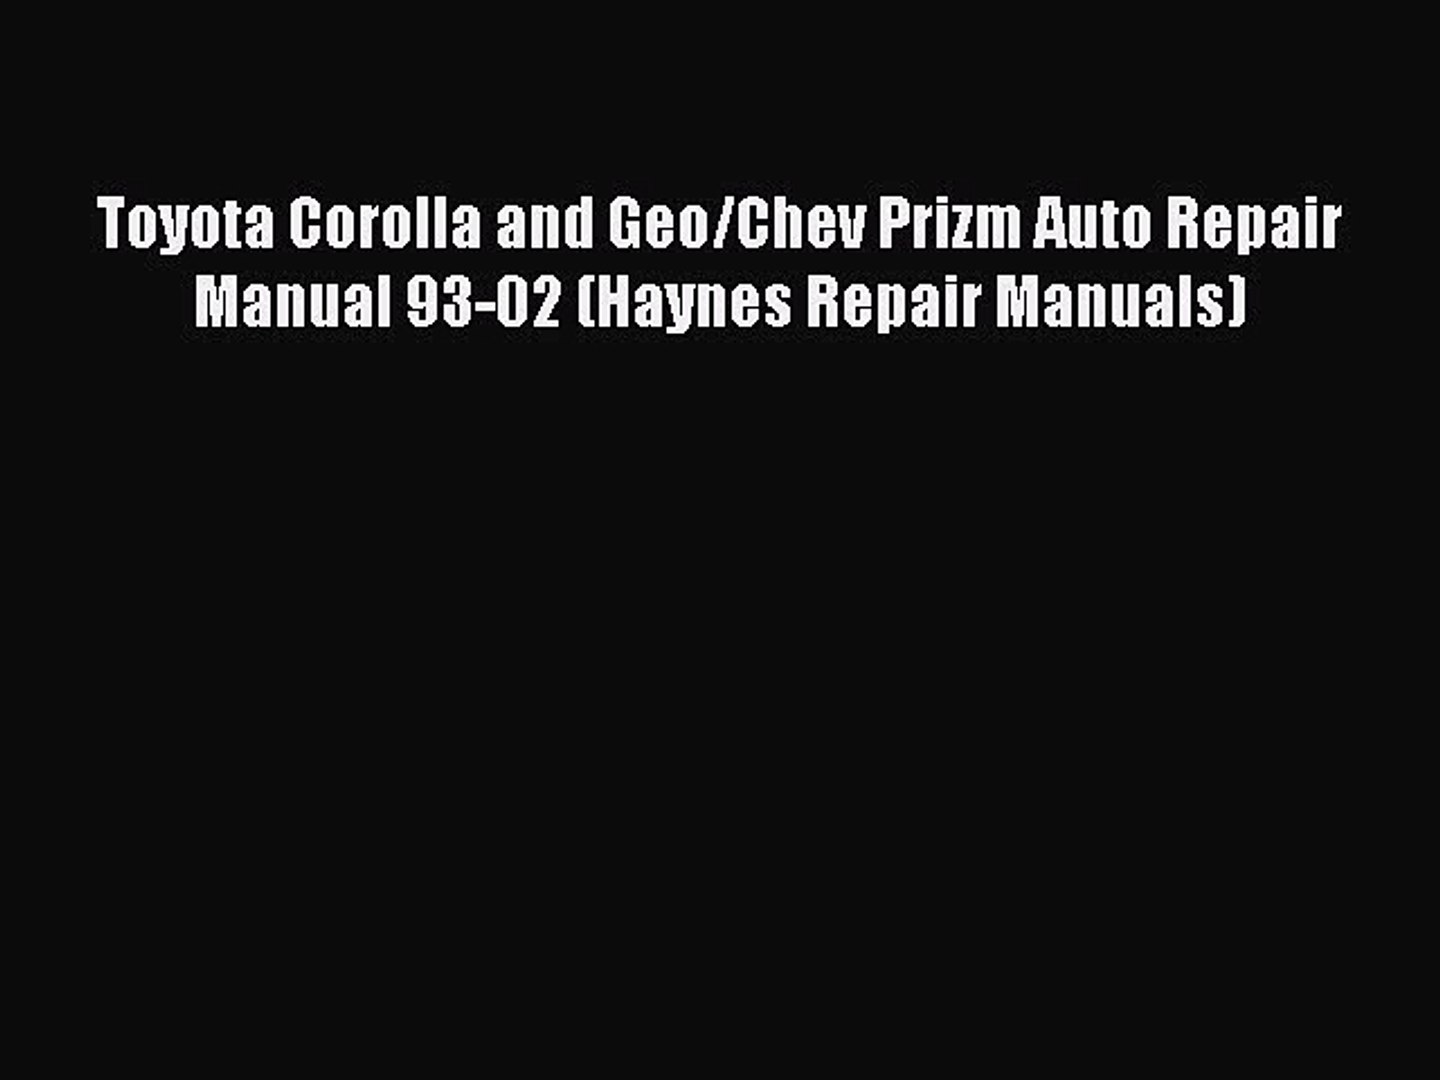 [Read Book] Toyota Corolla and Geo/Chev Prizm Auto Repair Manual 93-02 (Haynes Repair Manuals)